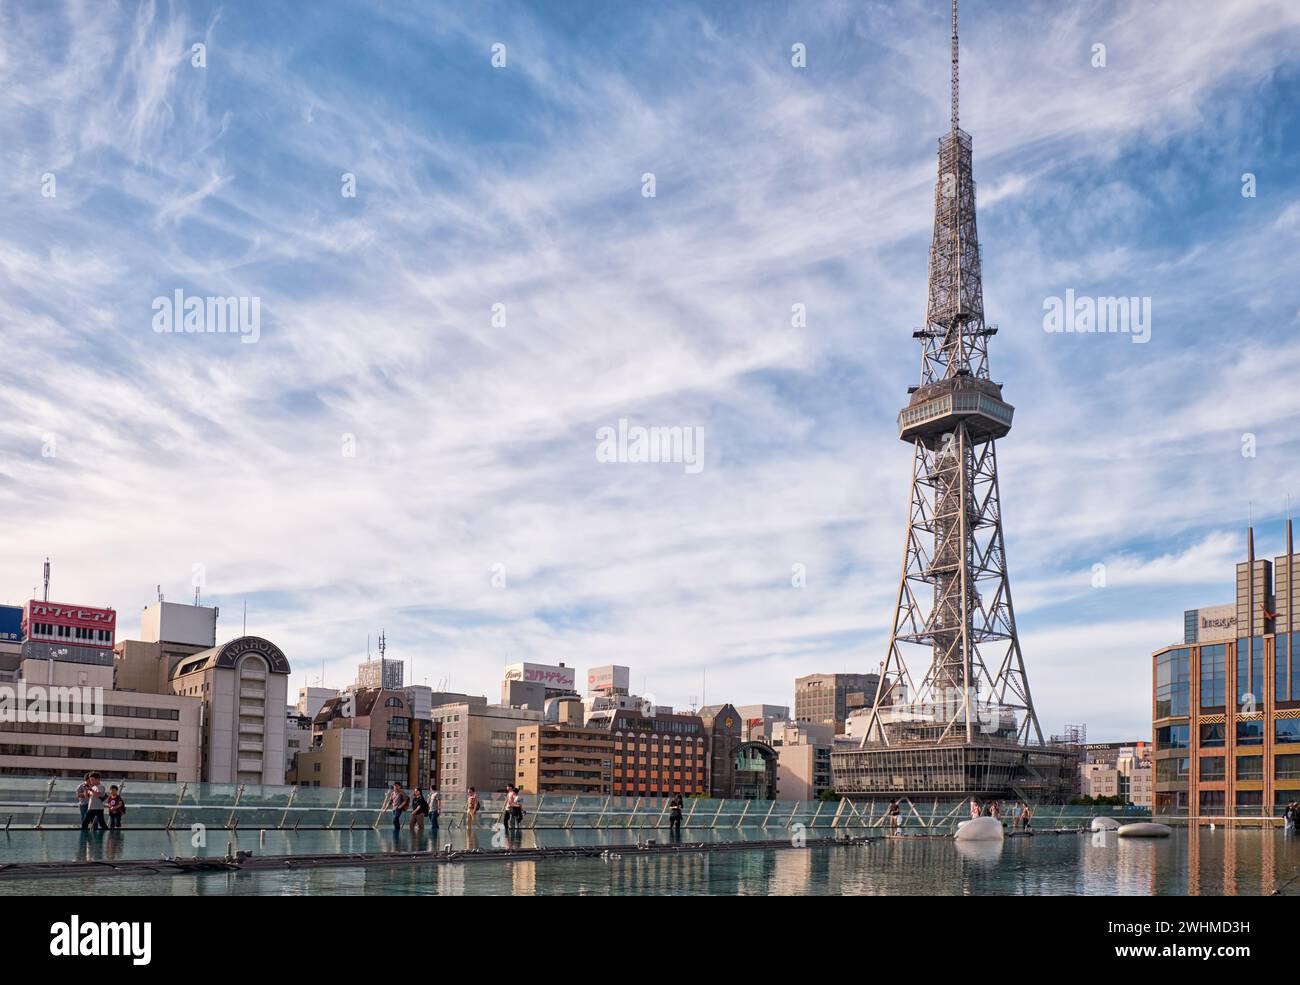 La torre della televisione di Nagoya sorge sulla superficie dell'acqua dell'Oasi 21. Nagoya. Giappone Foto Stock